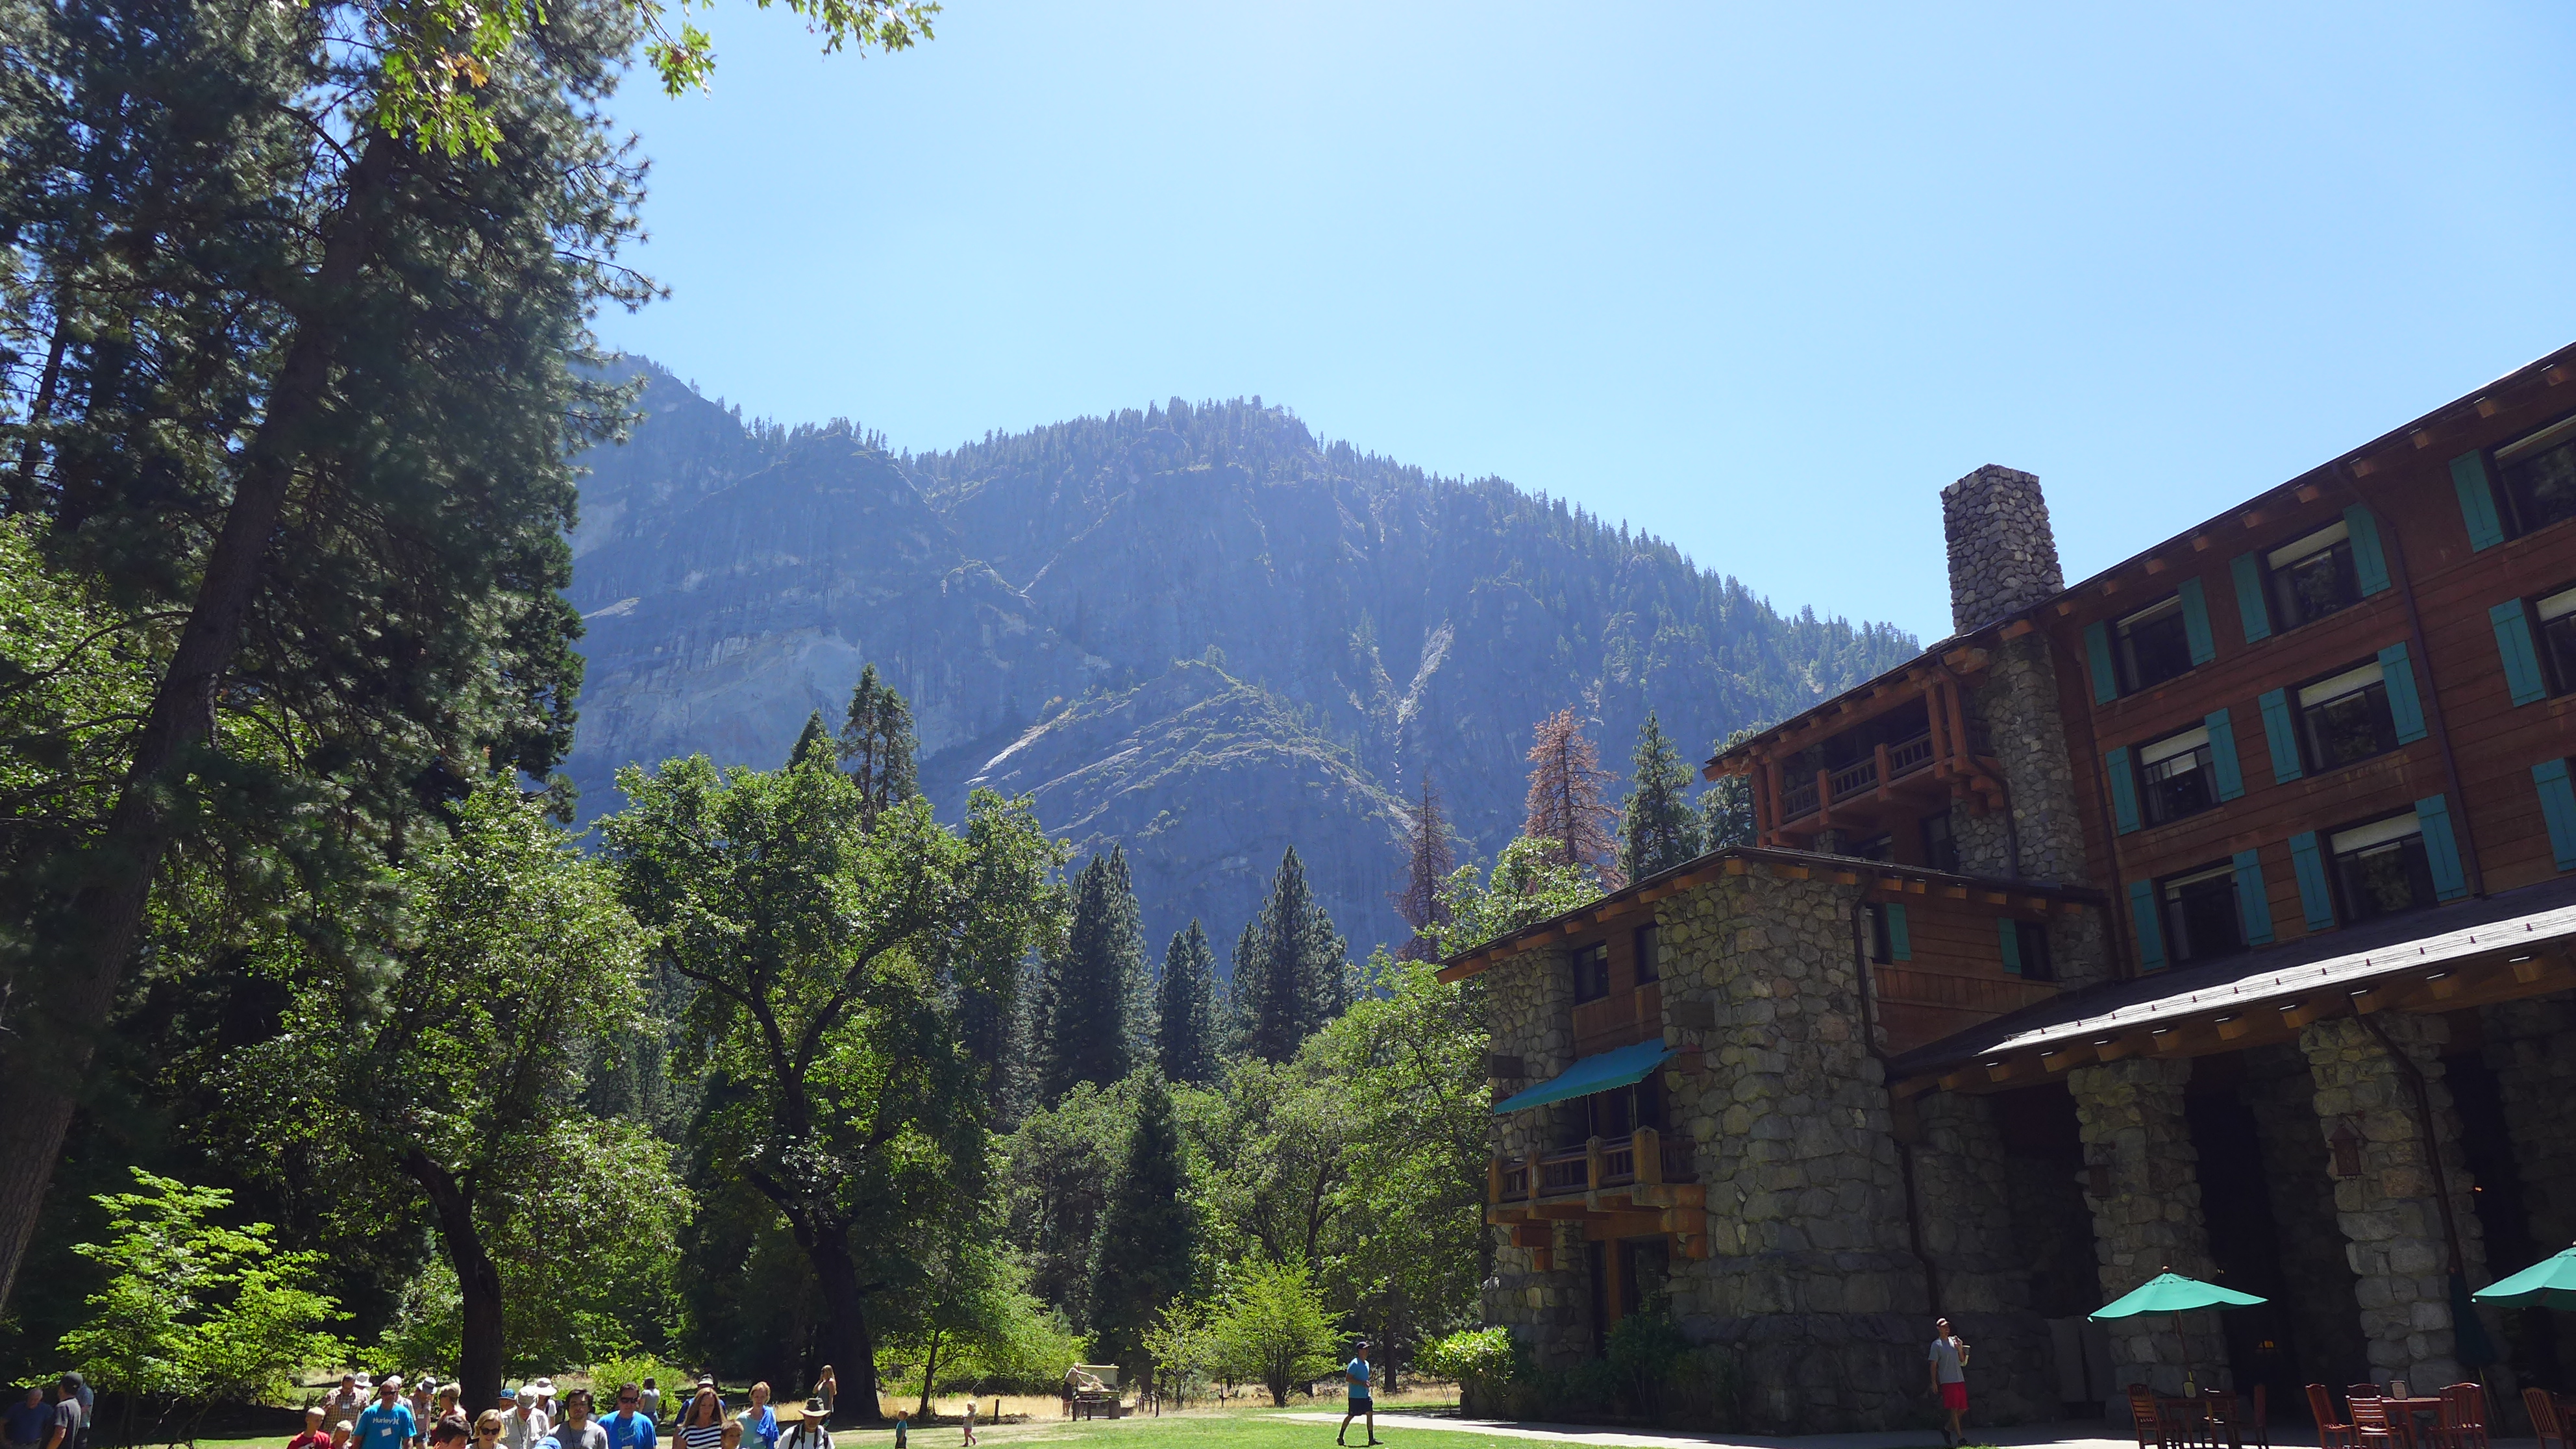 미국 요세미티( Yosemite) 국립공원.  바이든 행정부는 내년 예산에서 국립공원에 대한 자금을 늘릴 것을 제안한 가운데  미국 국립공원들은 코로나19 여파로 지난해 대자연을 만끽하지 못한 관광객들이 올 여름 대거 몰릴 것을 대비해 준비하고 있다고 월스트리트저널(WSJ)은 전했다.